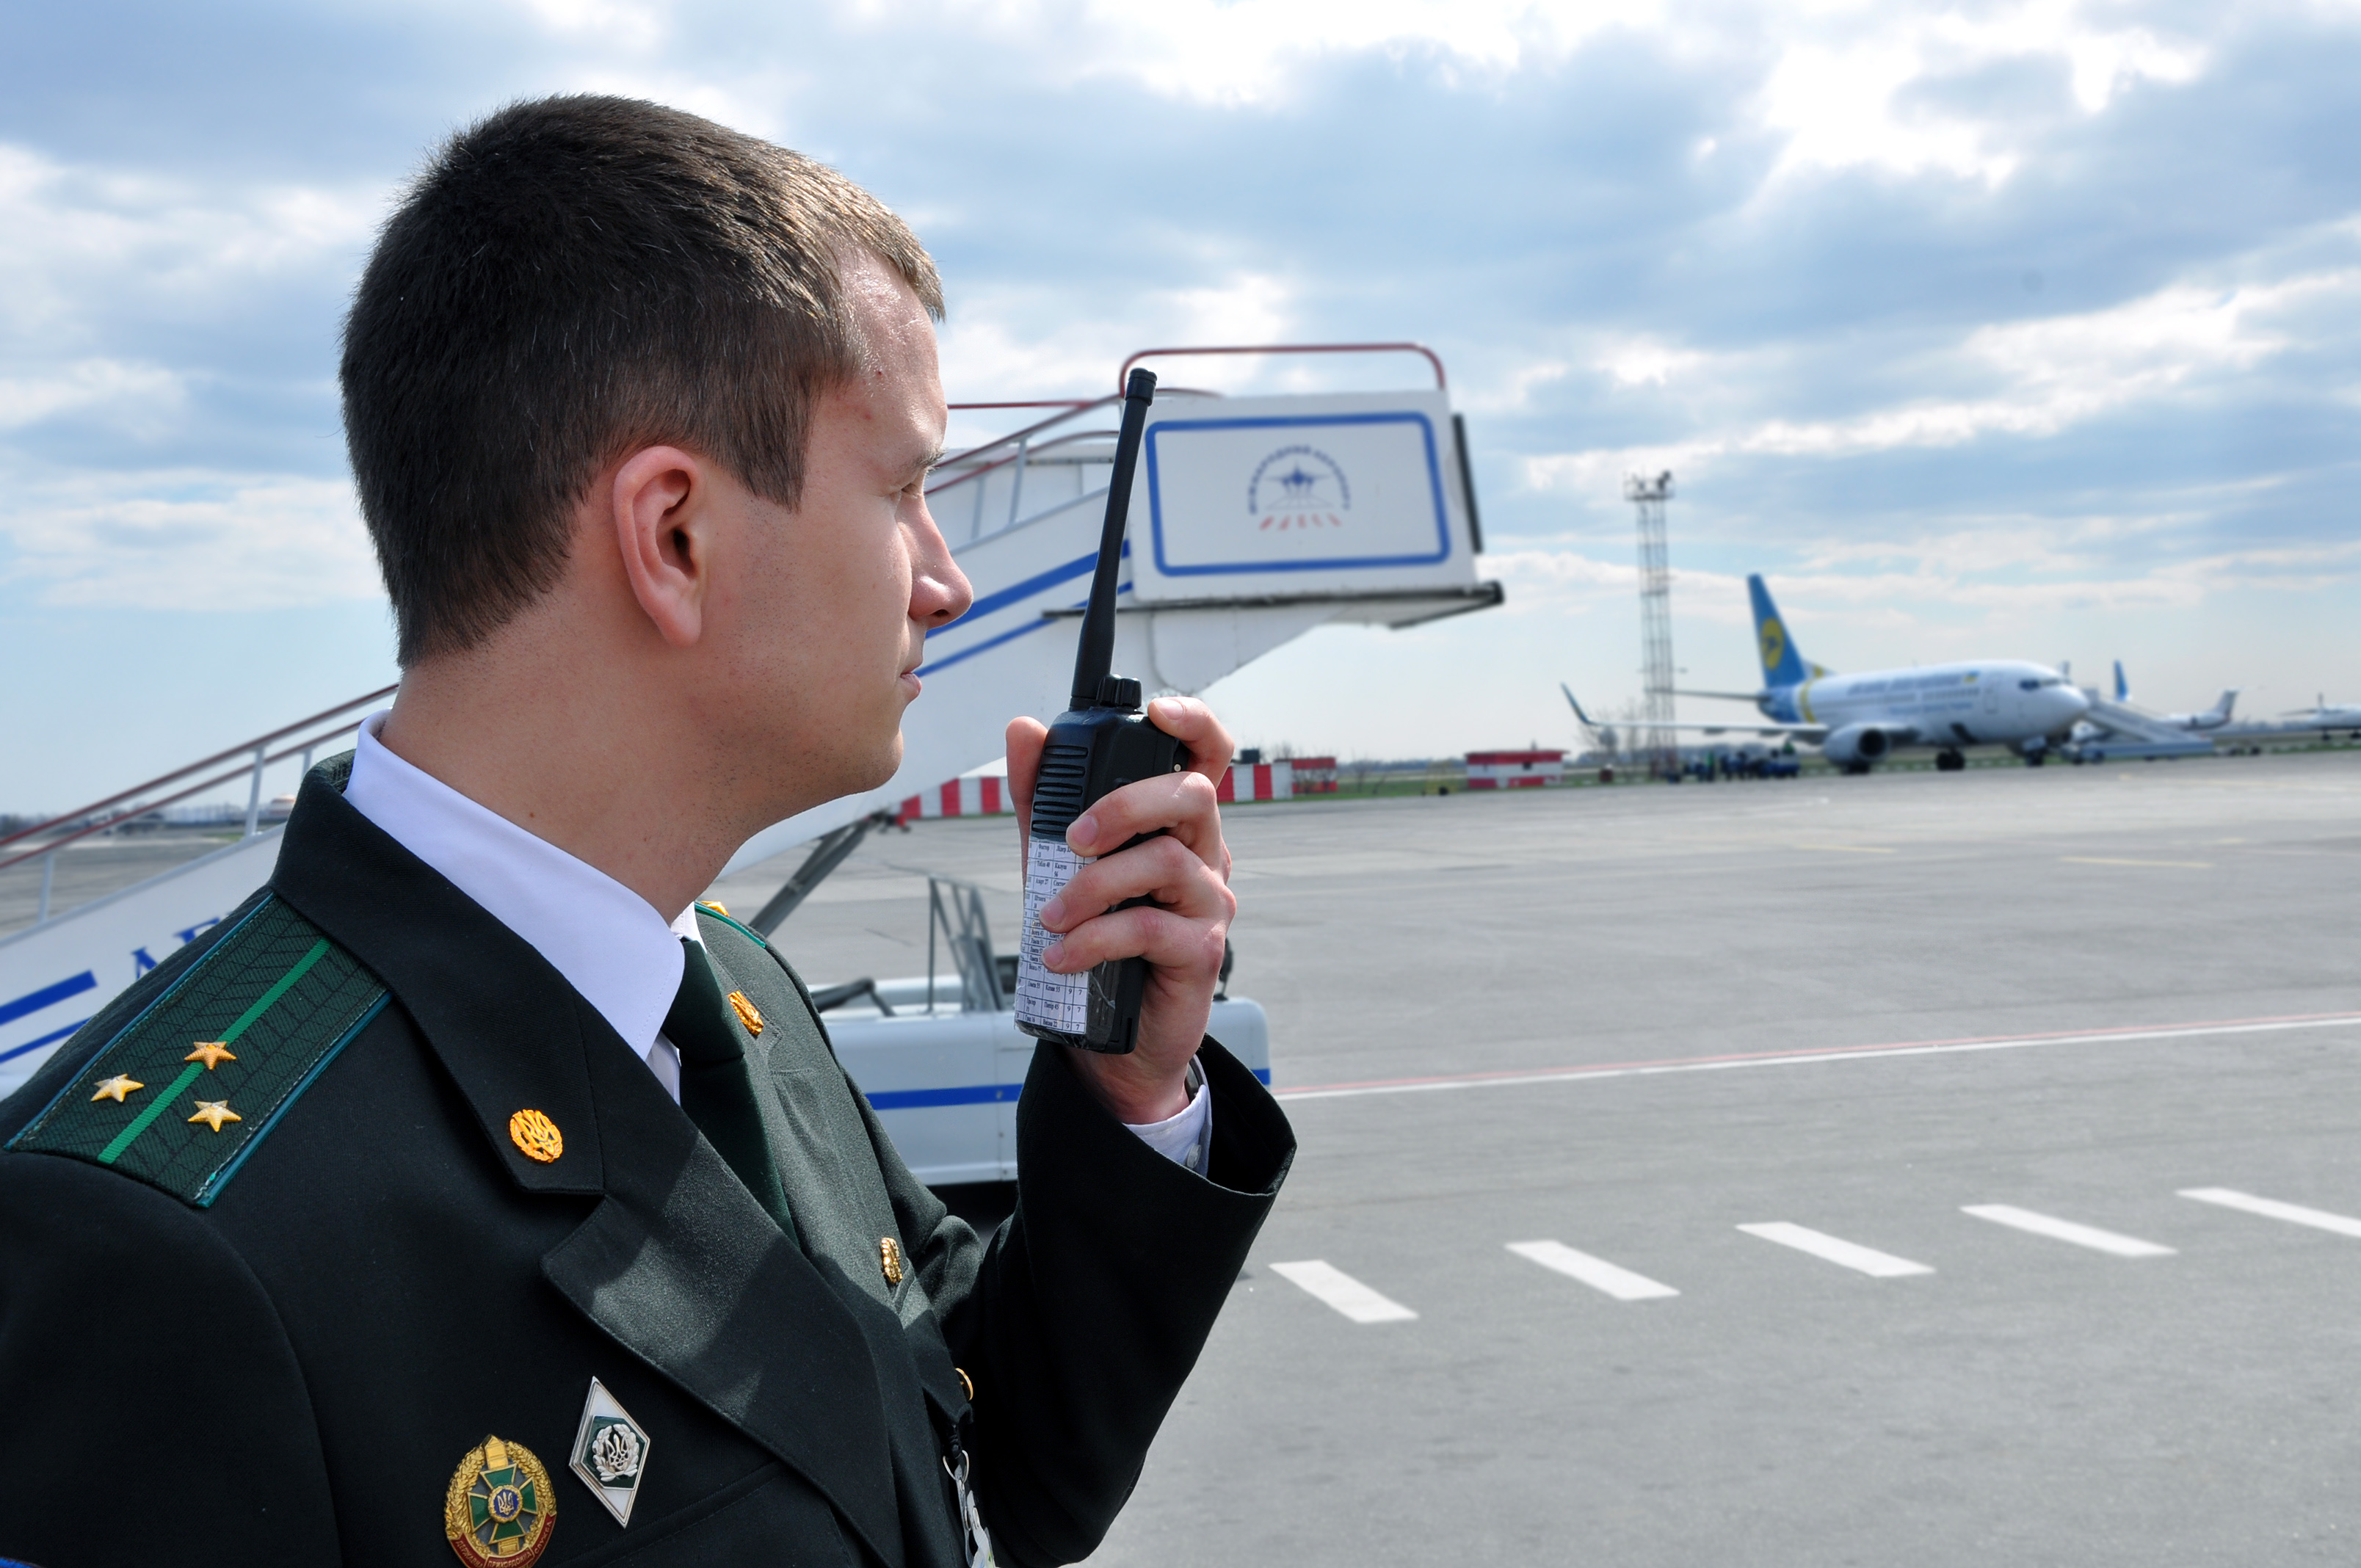 Пограничная служба внуково. Отряд пограничного контроля в международном аэропорту Шереметьево.